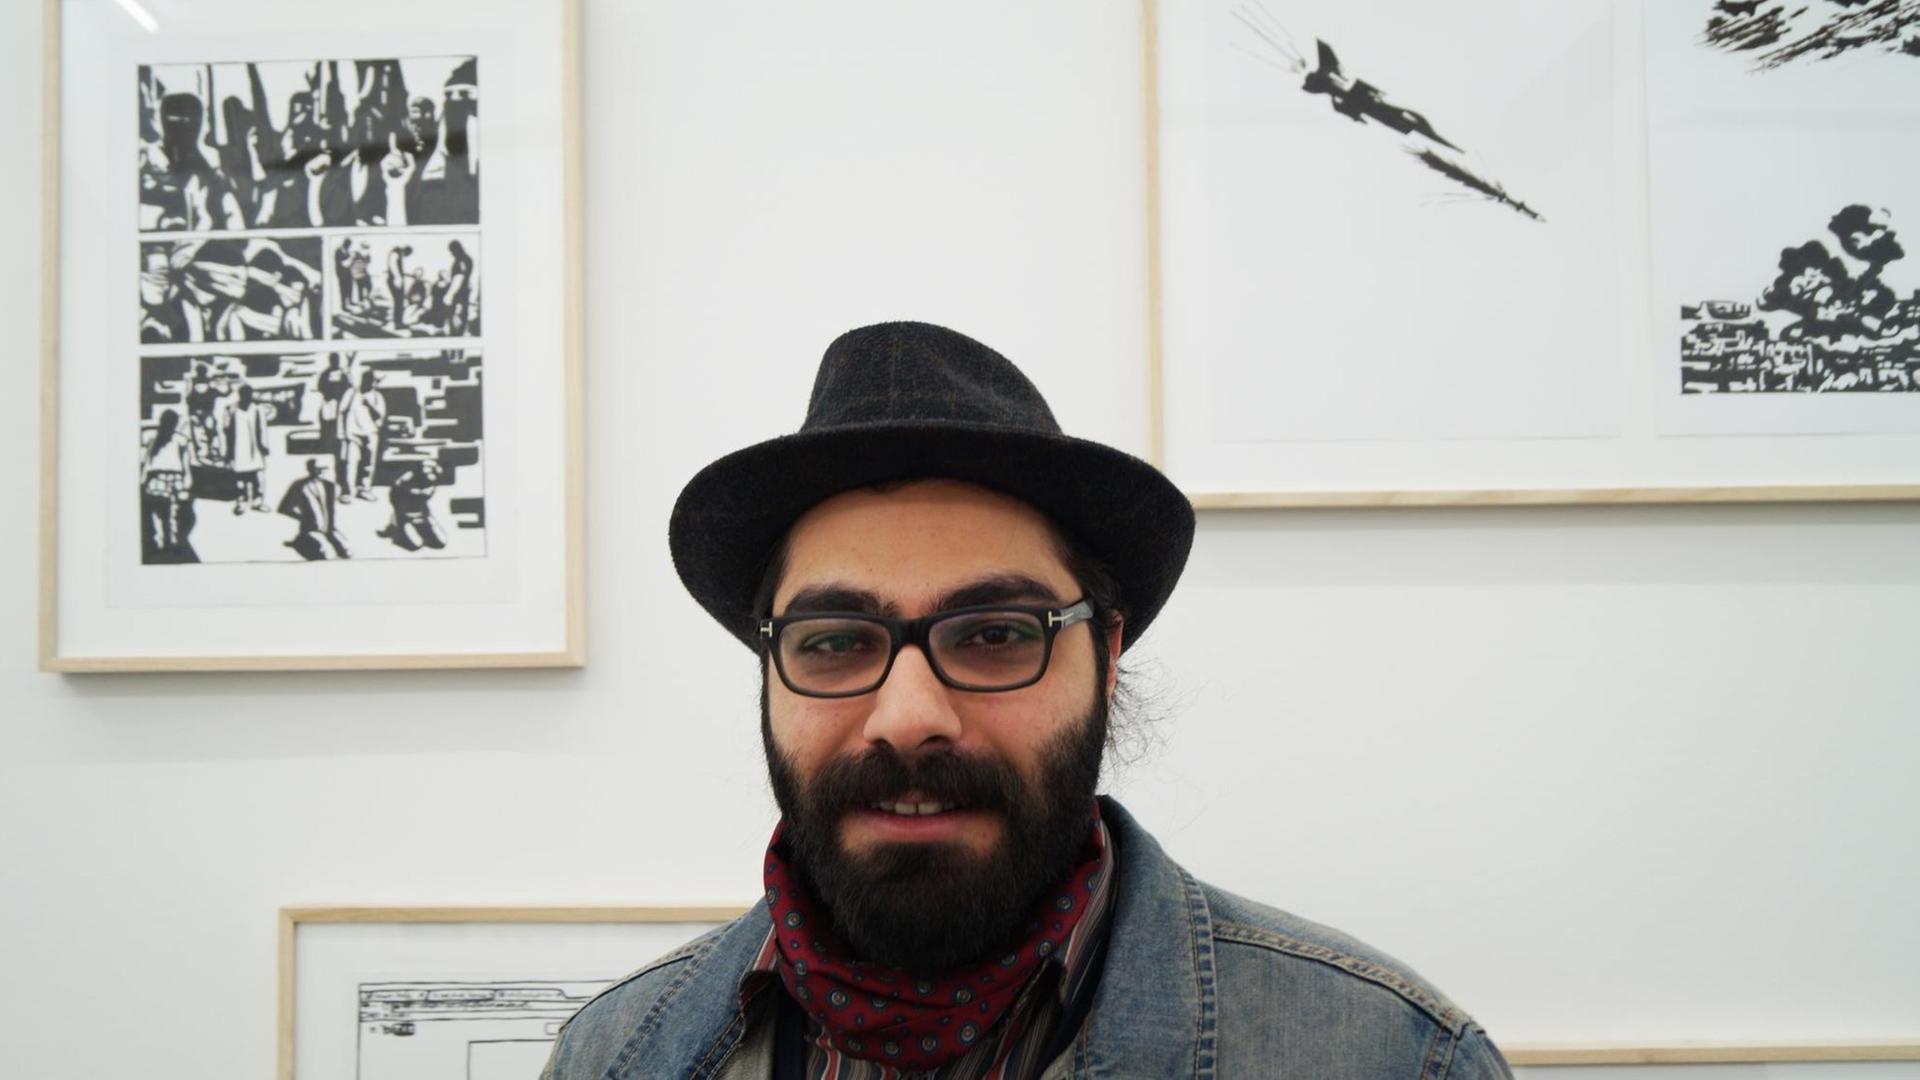 Hamid Sulaiman in seiner Ausstellung "Hamid Sulaiman - Freedom Hospital", Galerie Crone Berlin 9. April - 18. Juni 2016. Der Künstler steht vor den Bildern des Comics.